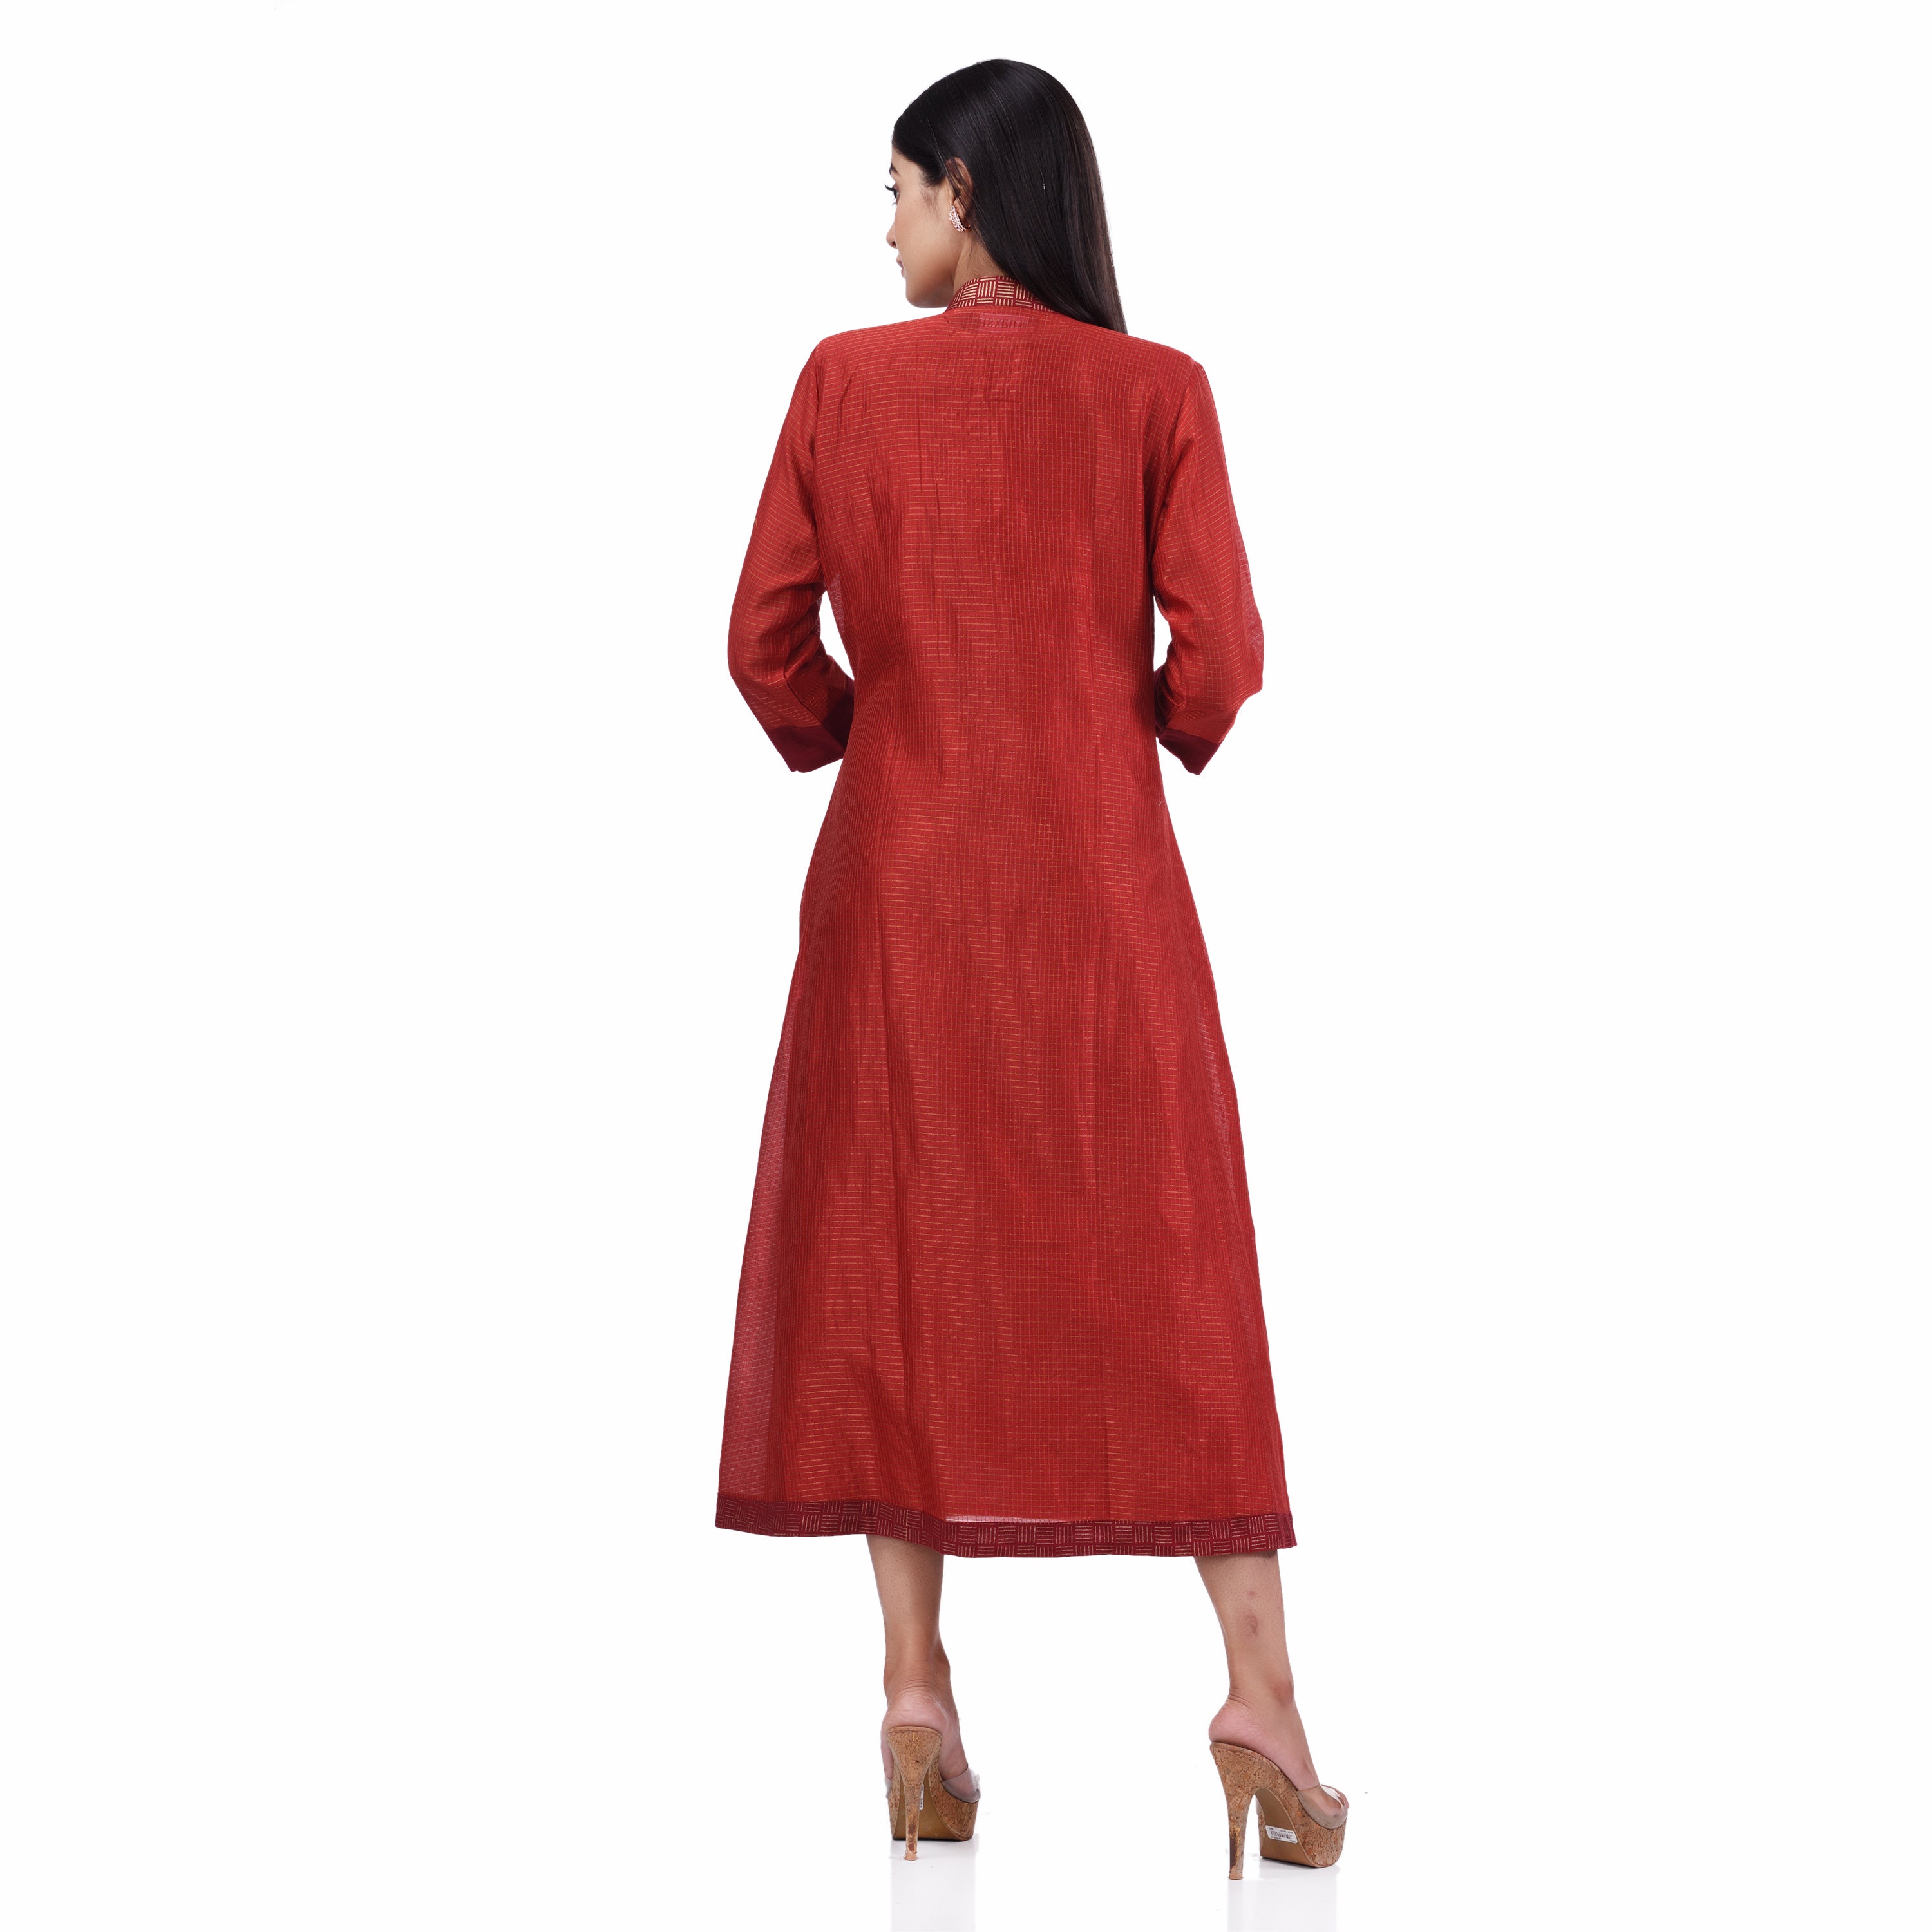 Red Cotton Linen and Zari chanderi Hand Block Print Women's Ethnic Dress/kurti